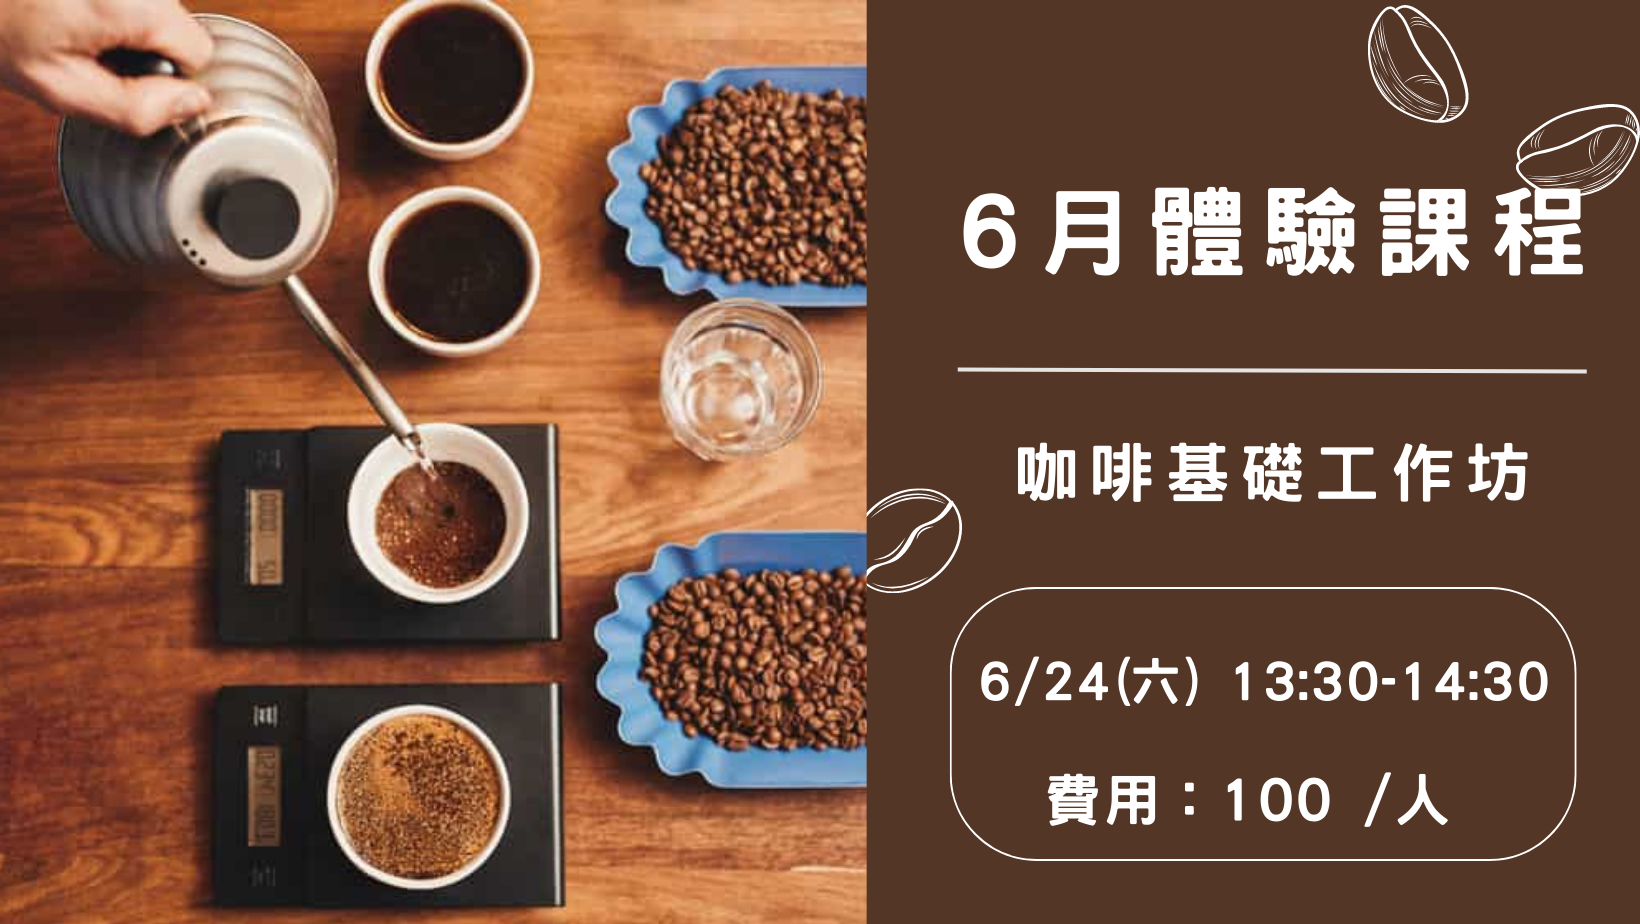 5月 ▌允品咖啡 YP Ｘ咖啡基礎工作坊 ▌體驗課程